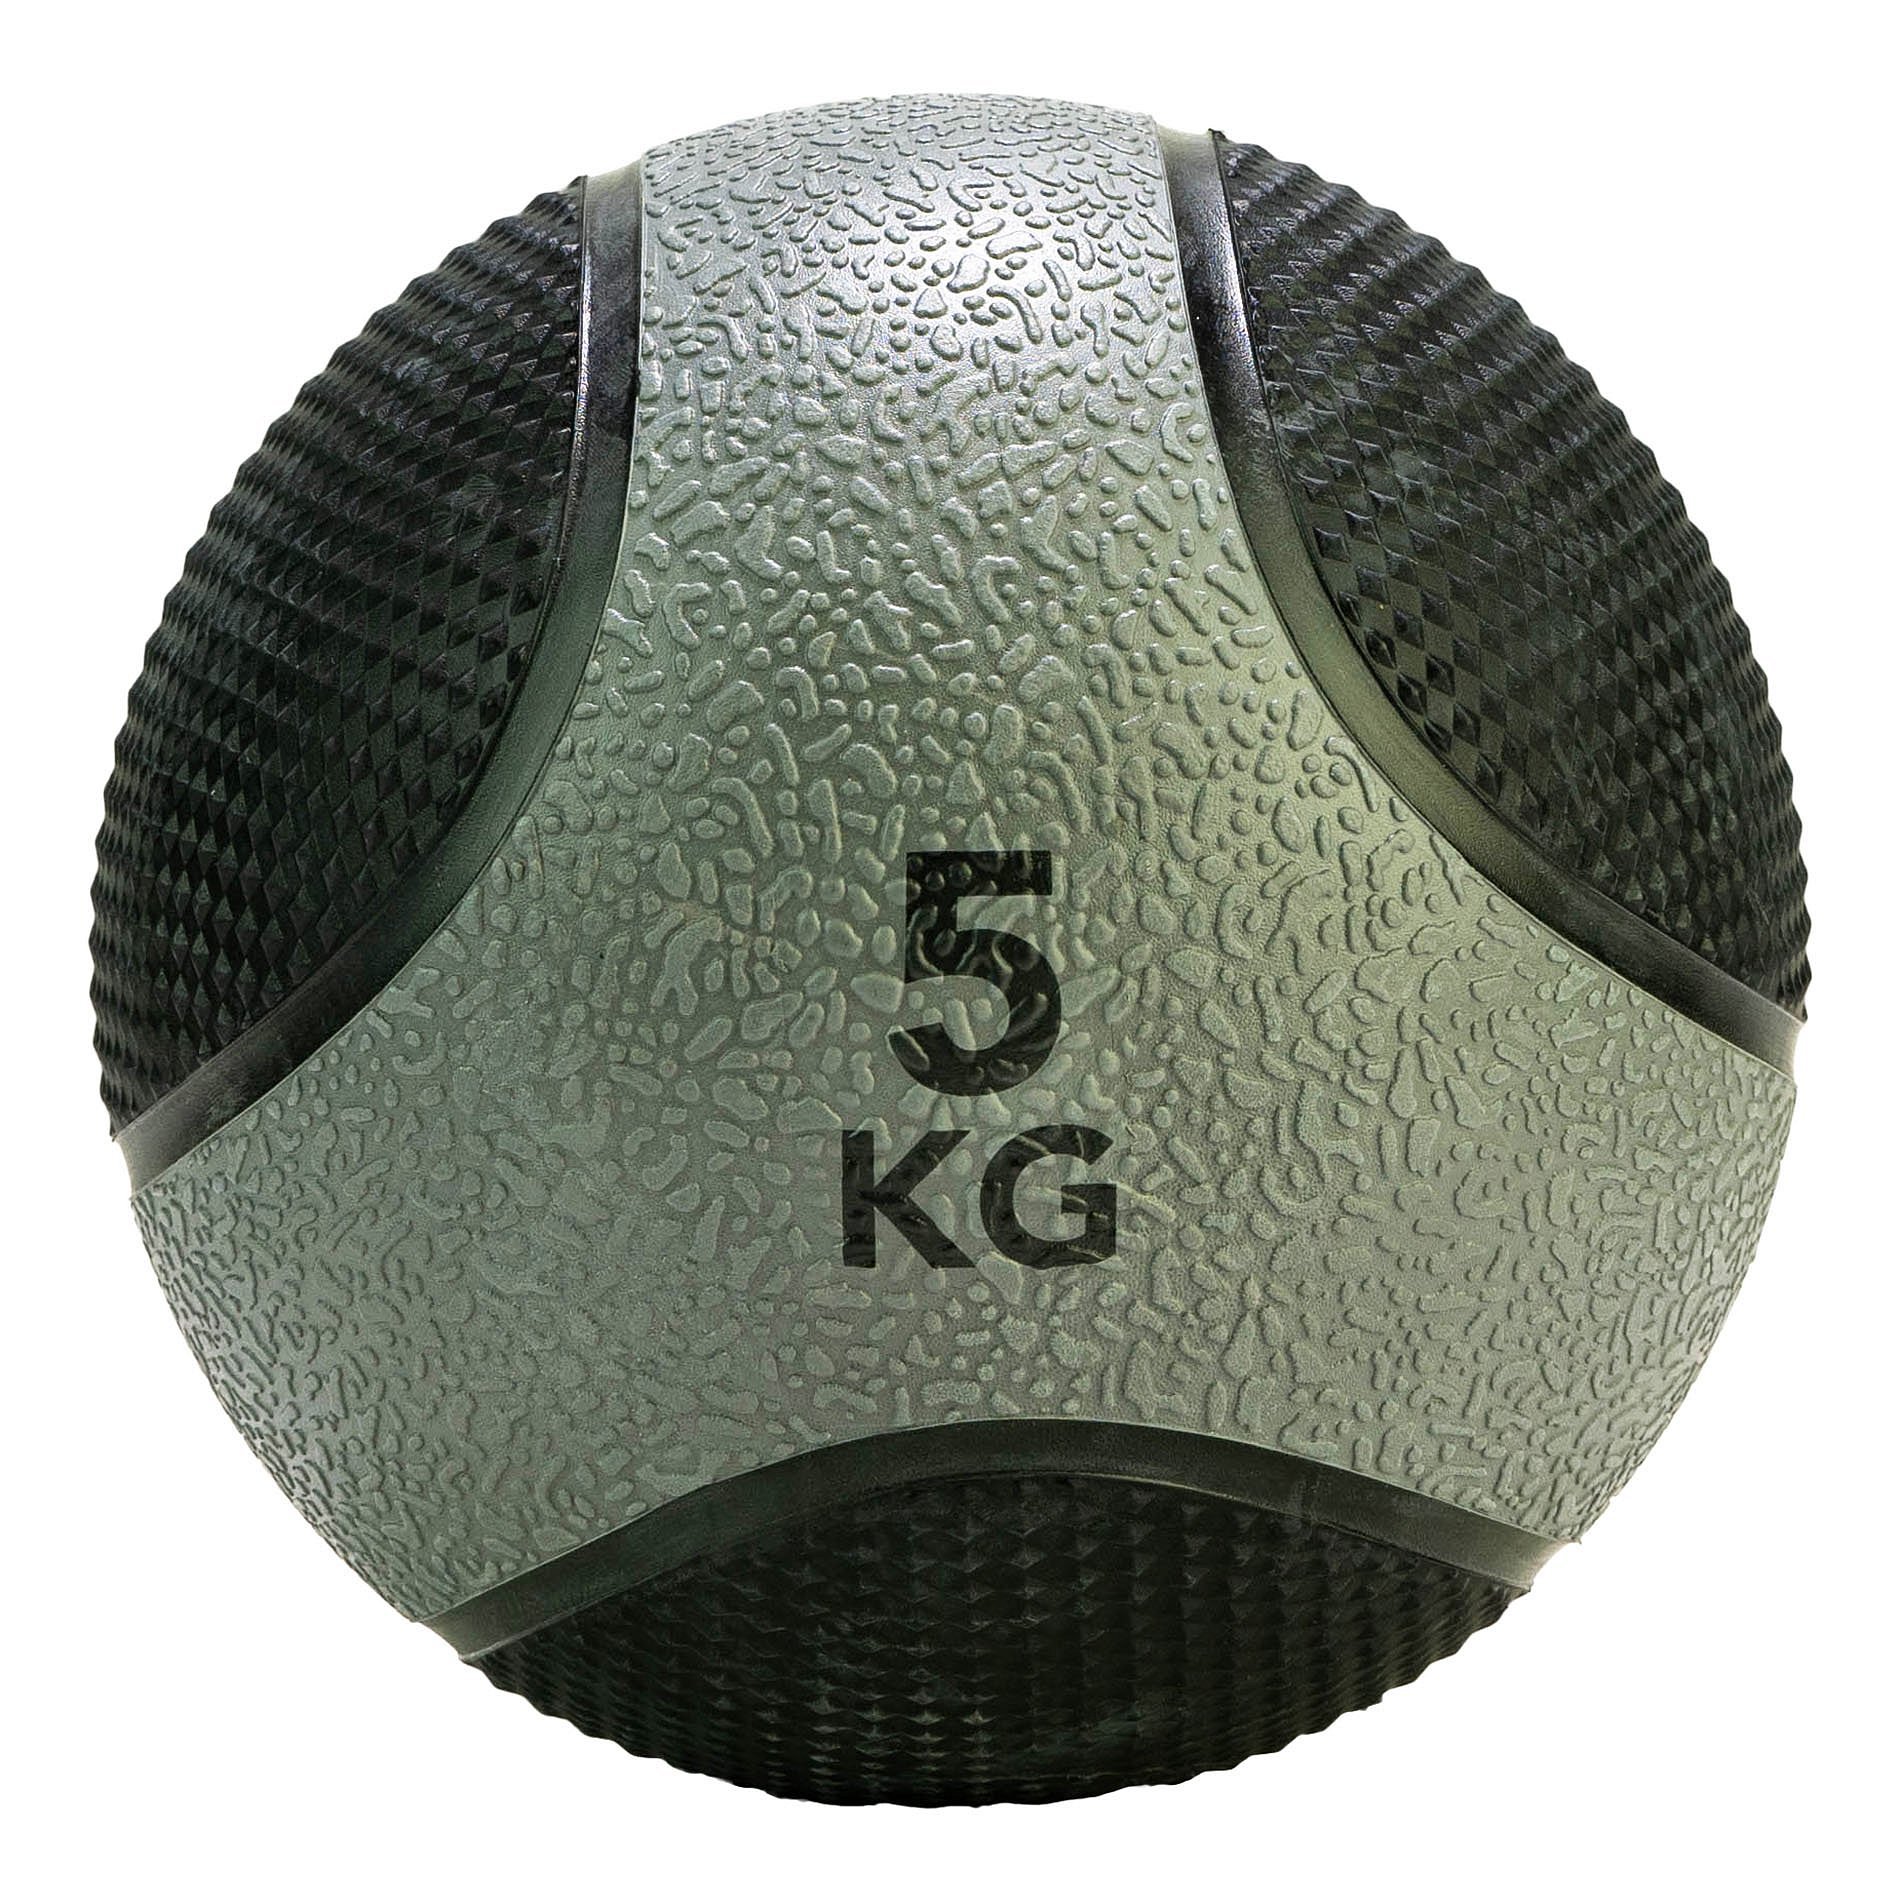 Medicinbal gumový 5 kg TUNTURI šedo/černý